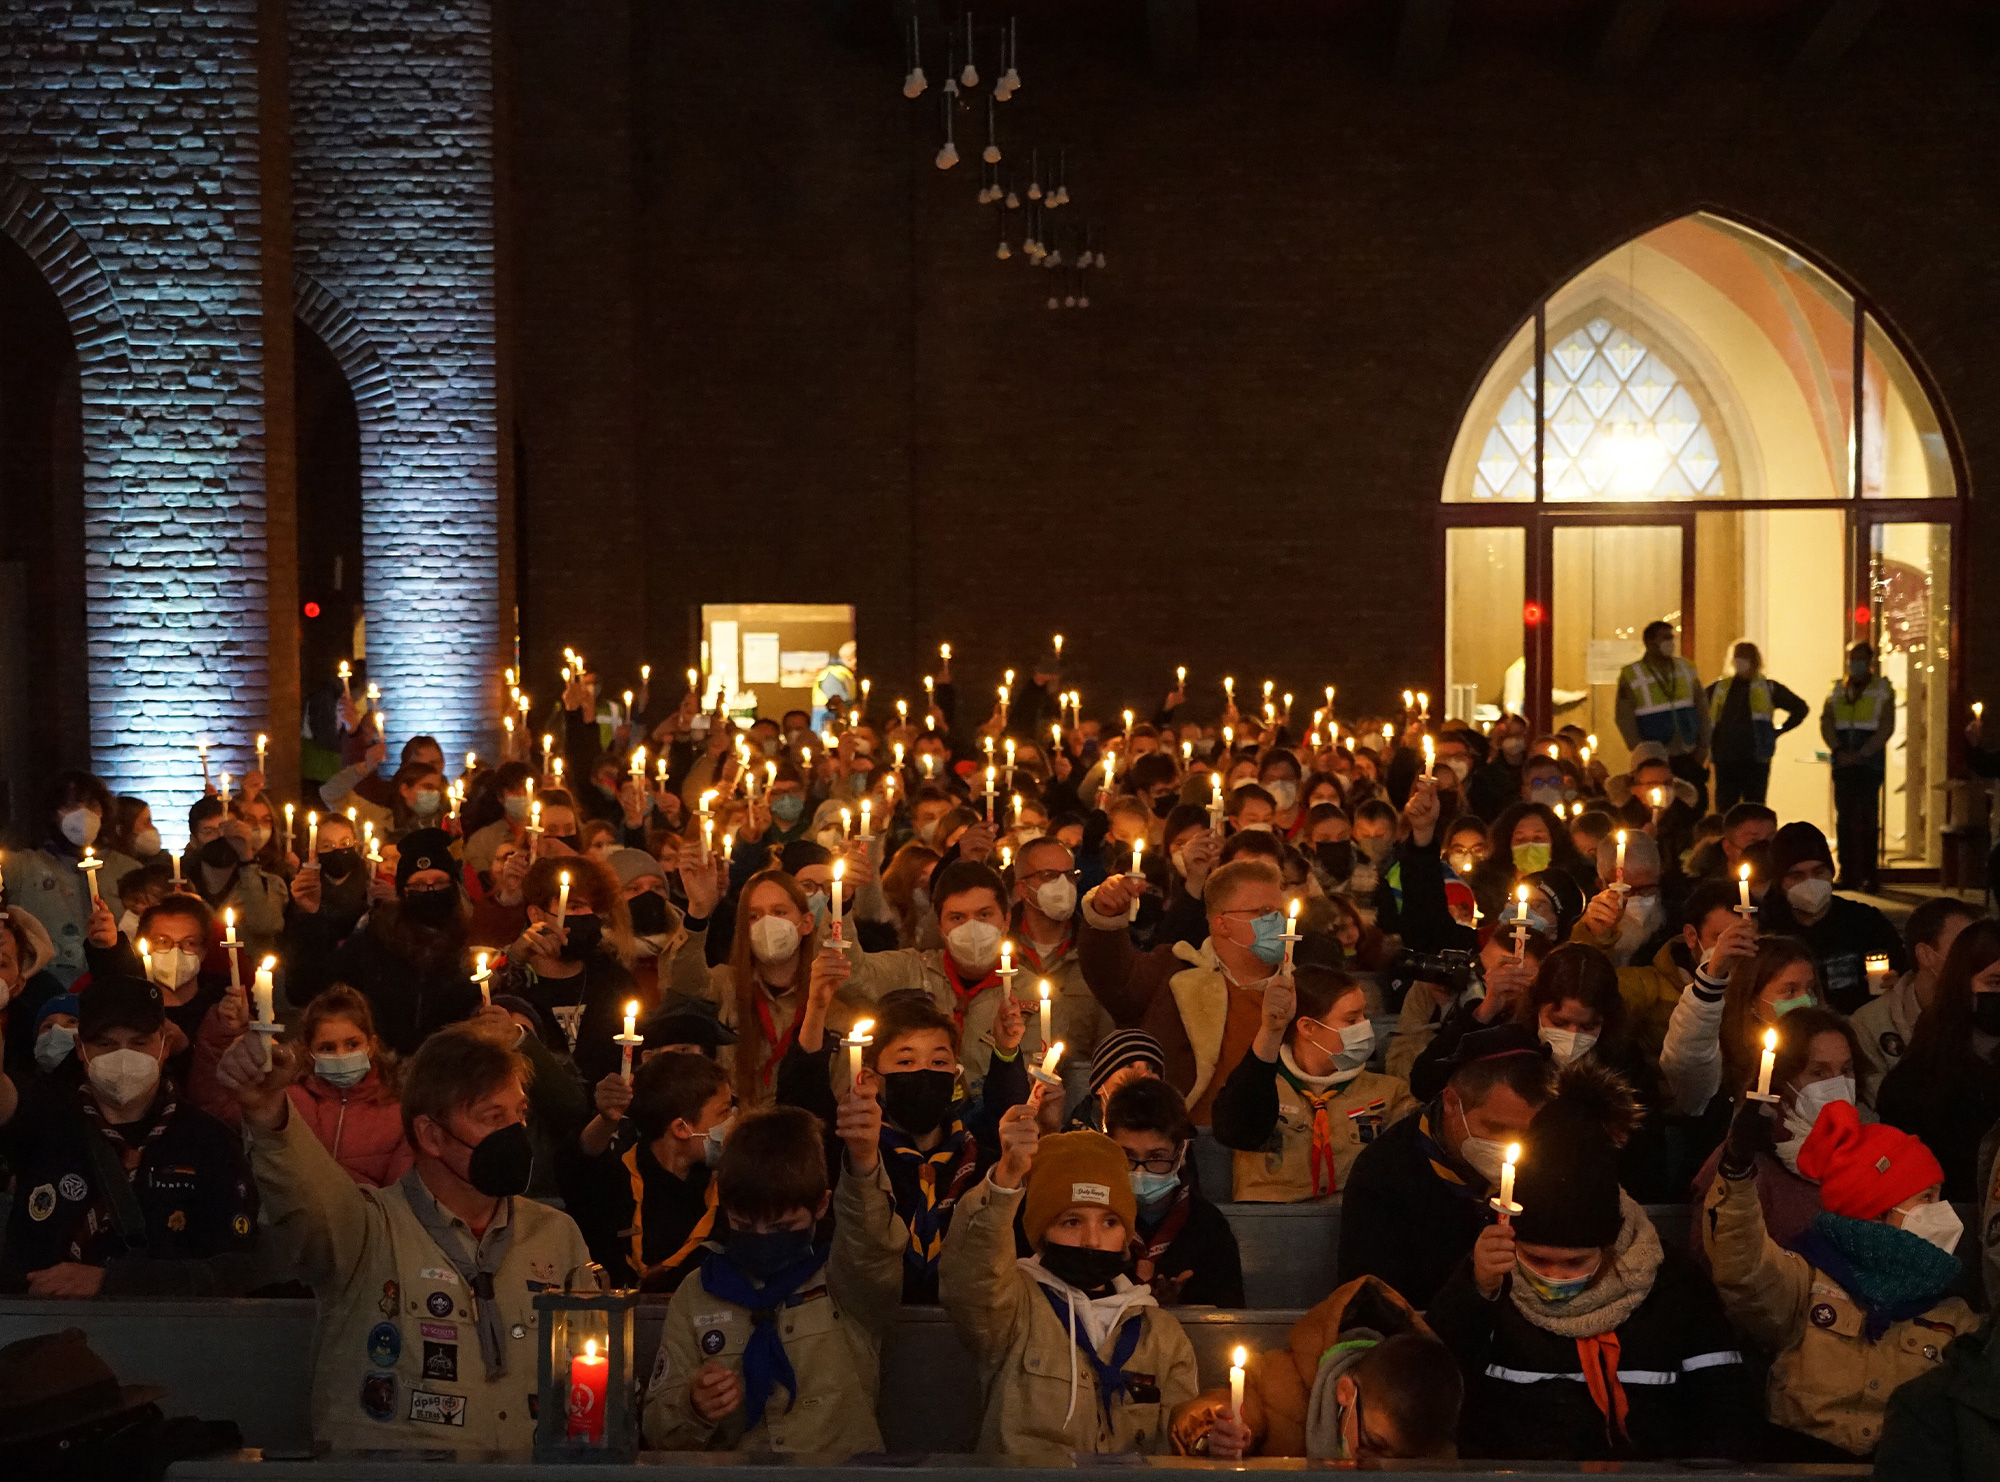 Hunderte kleiner Friedenslicht-Kerzen erhellten die St. Joseph-Kirche in Dortmund beim Aussendungsgottesdienst für das Friedenslicht aus Bethlehem. Foto: Michael Bodin / Erzbistum Paderborn